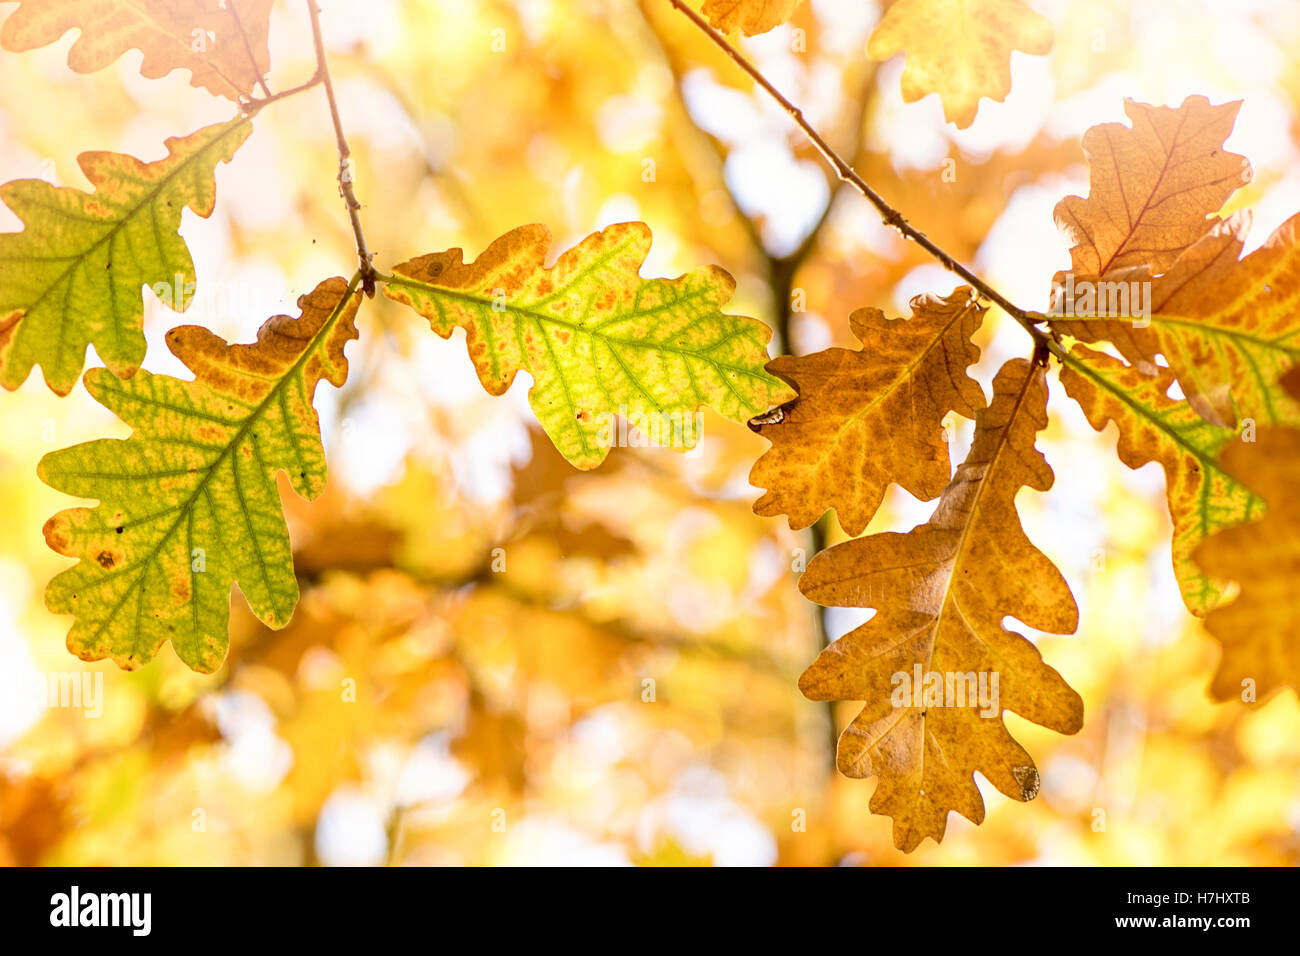 Im Herbst farbige englische Eichenlaub Aufnahme in der Herbstsonne auf einem weichen Hintergrund. Stockfoto